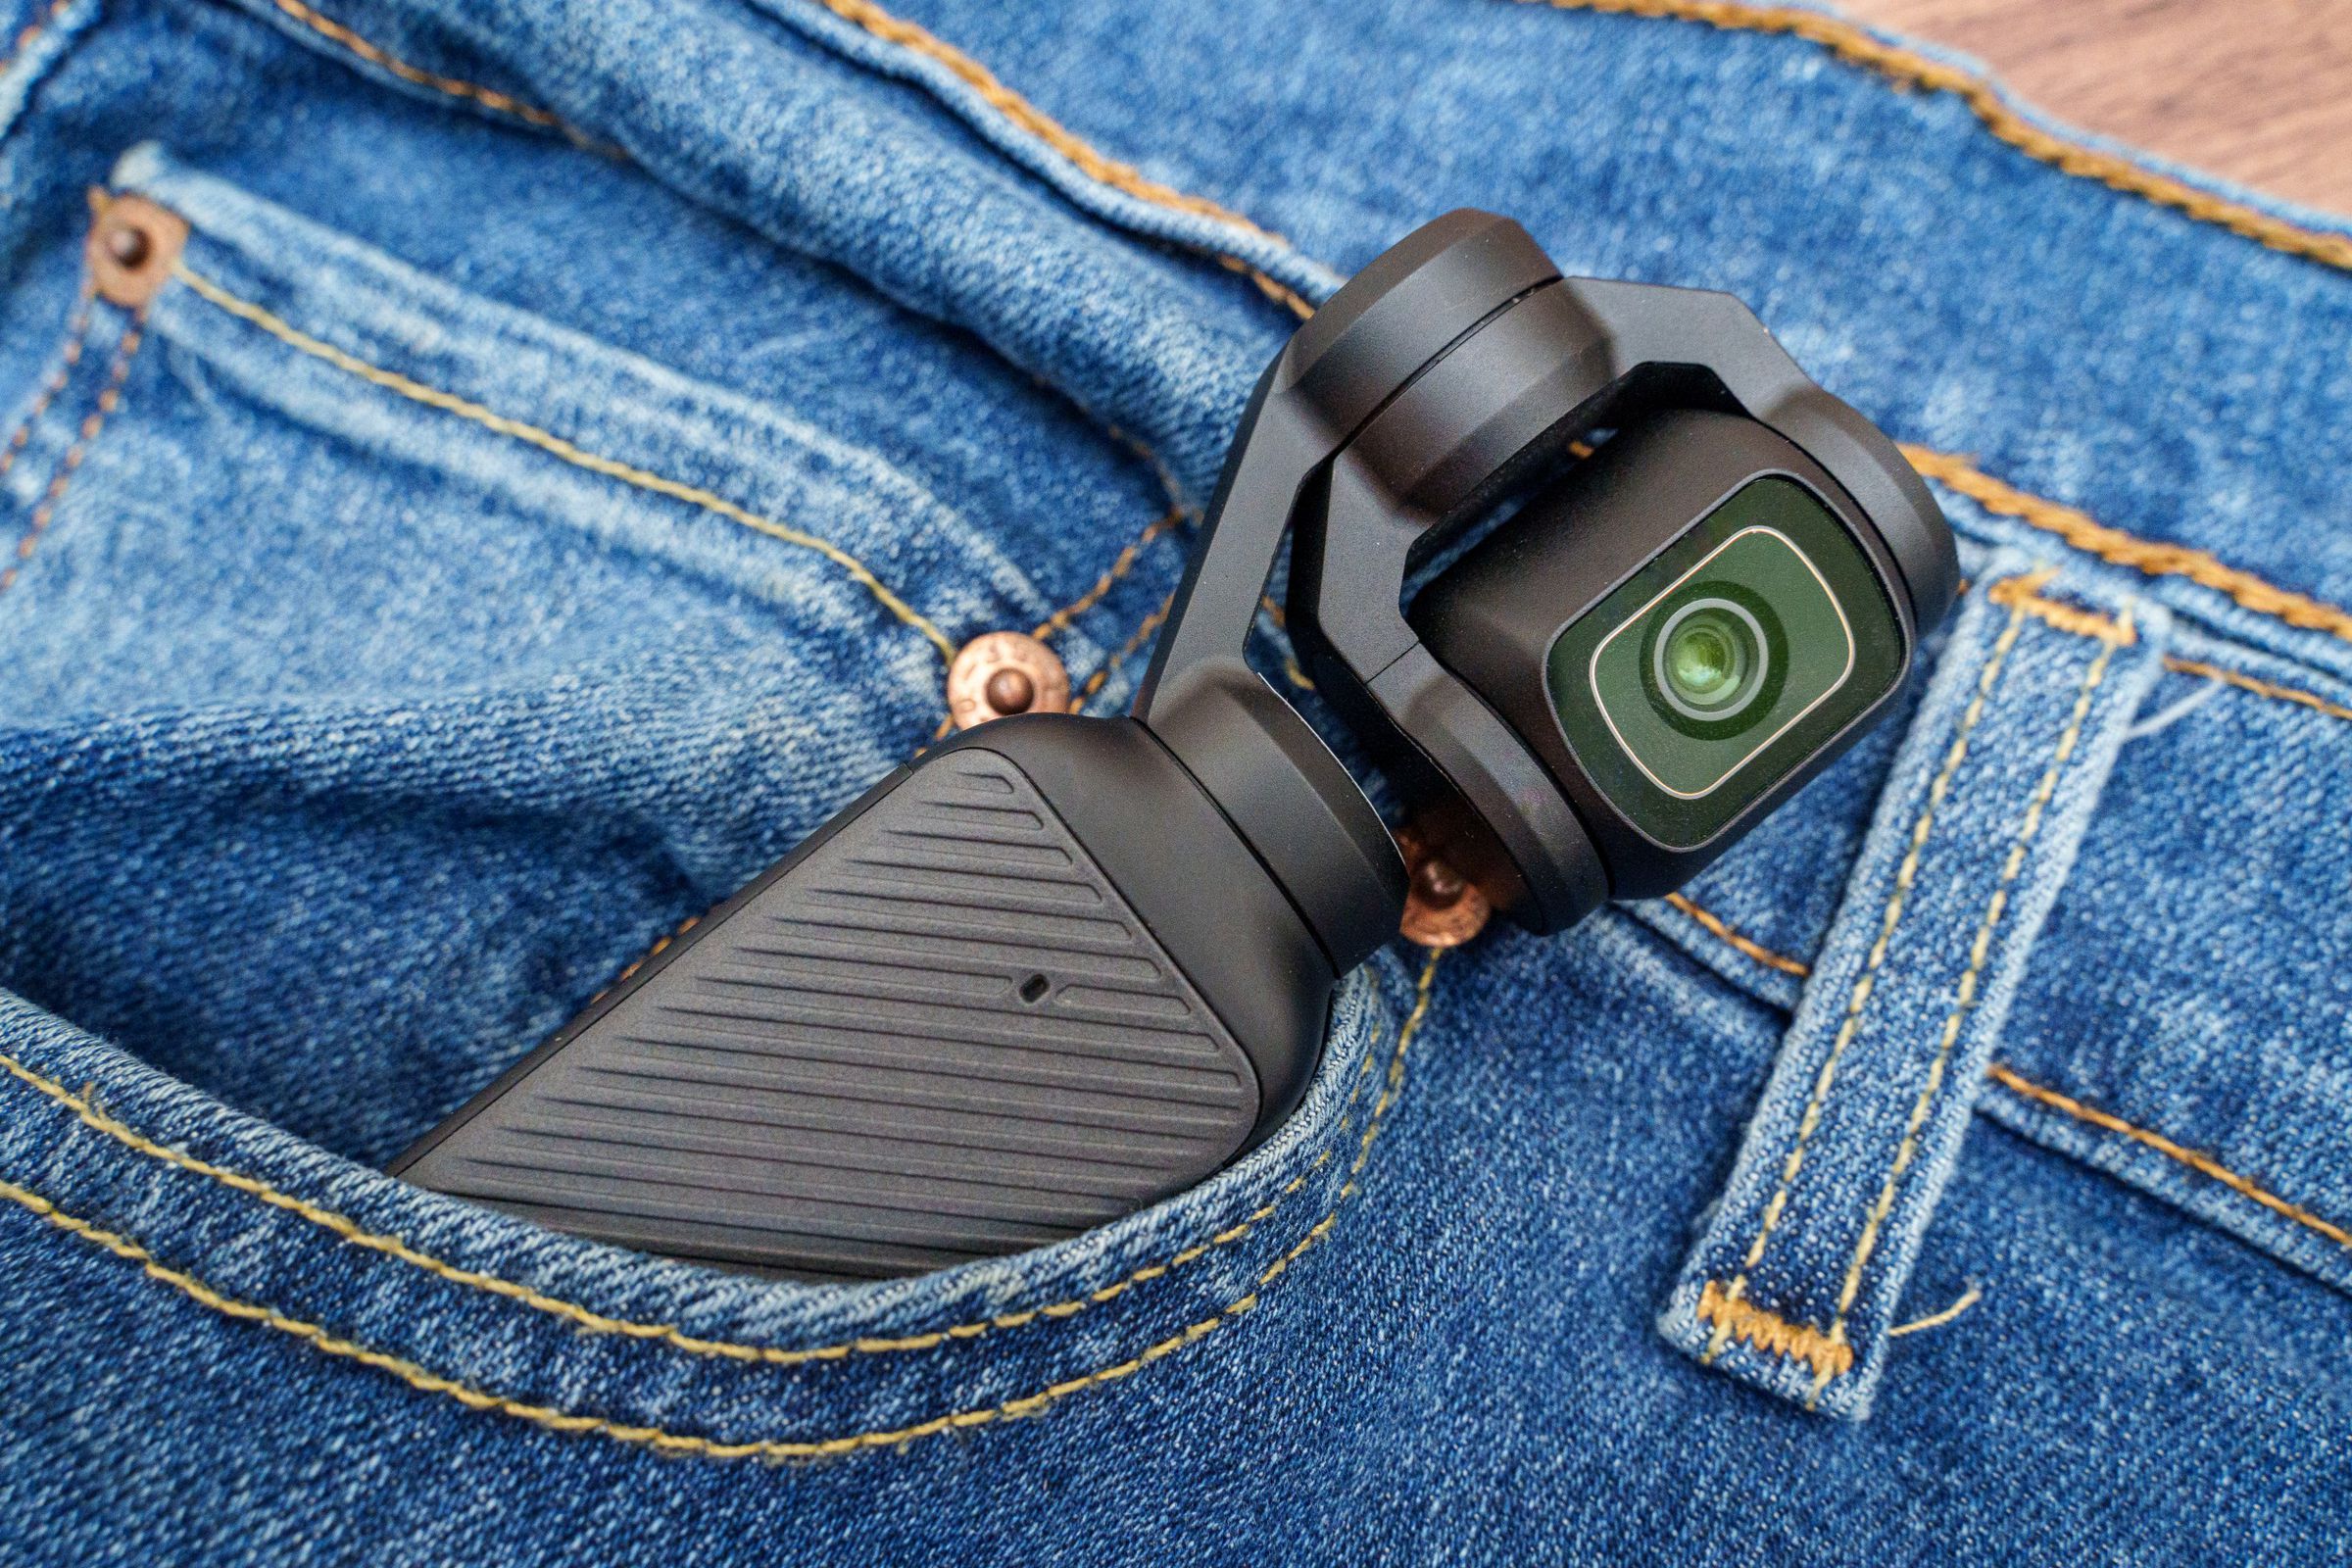 Meskipun namanya Pocket 3, kamera ini nggak nyaman banget buat dimasukin ke kantong sempit